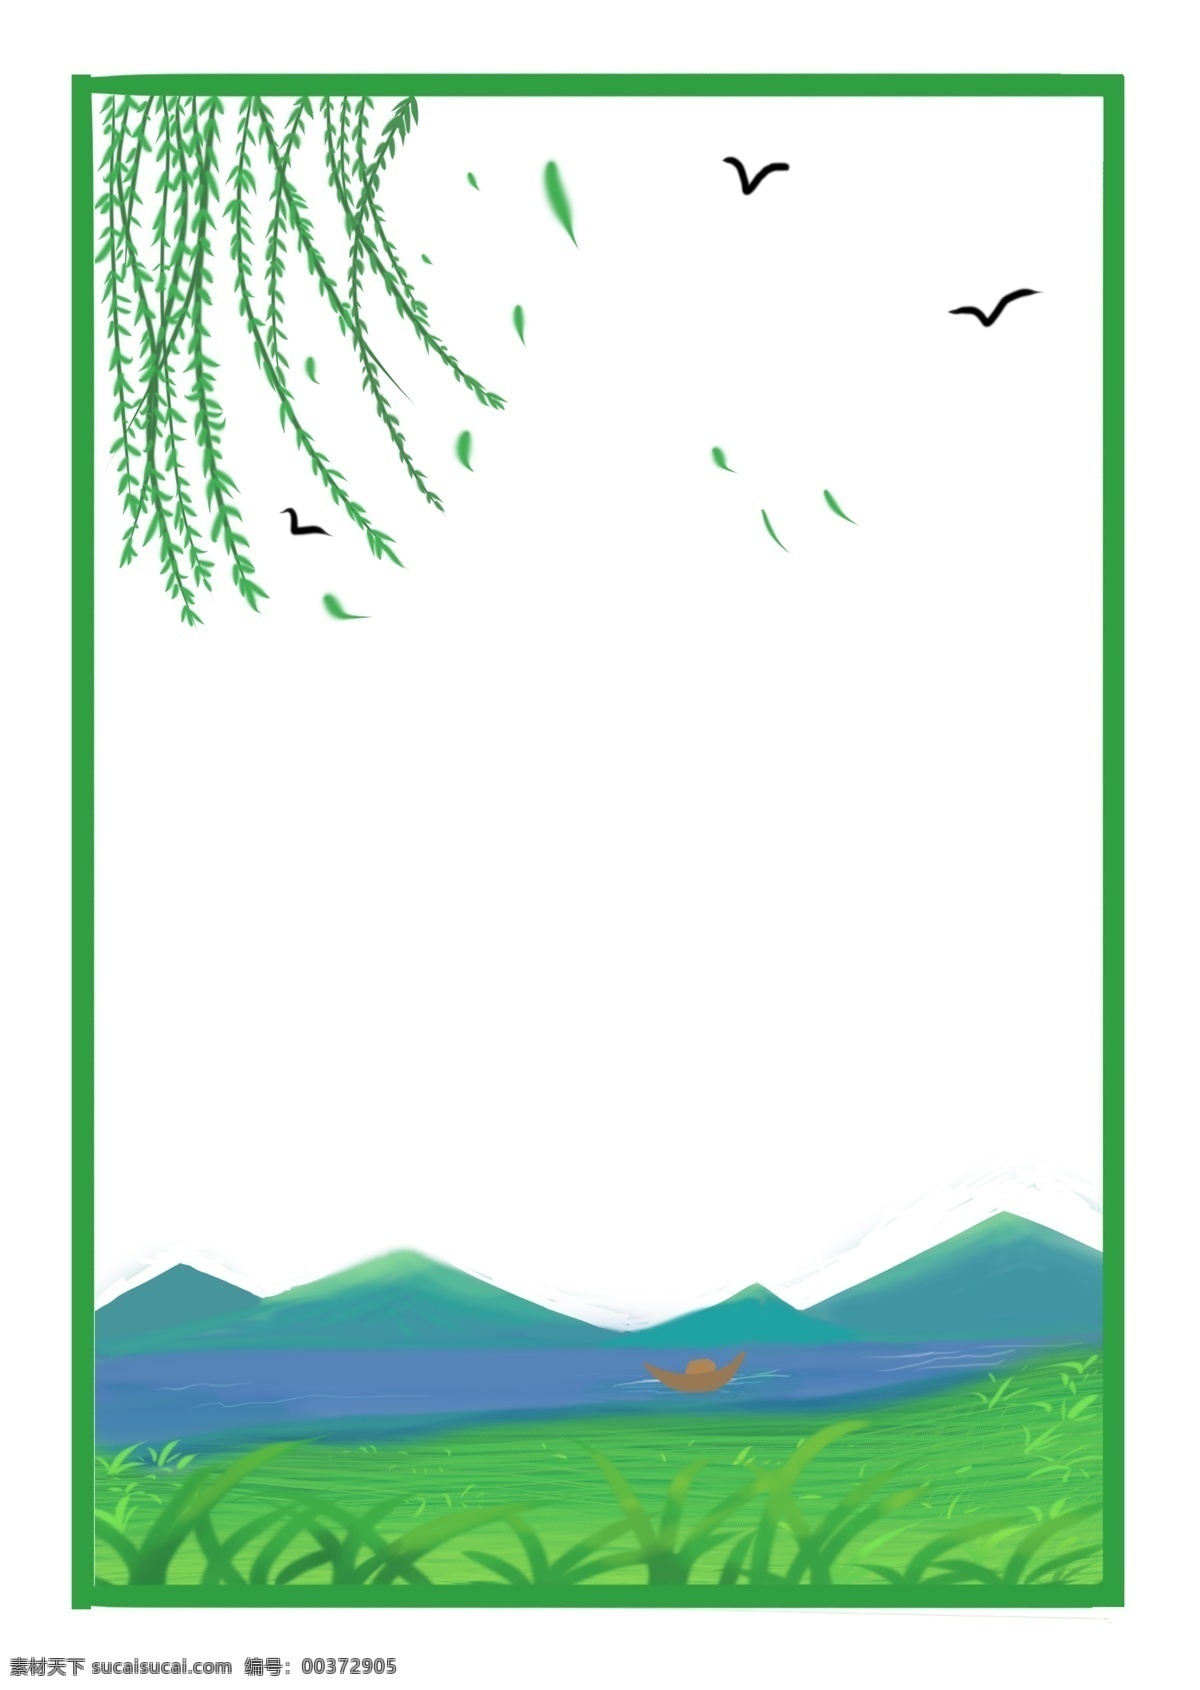 清明节 绿色 春季 风景 柳树 燕子 边框 春天 柳条 山水风景 春季边框 清明节边框 漂浮的柳叶 绿色的草地 青山绿水